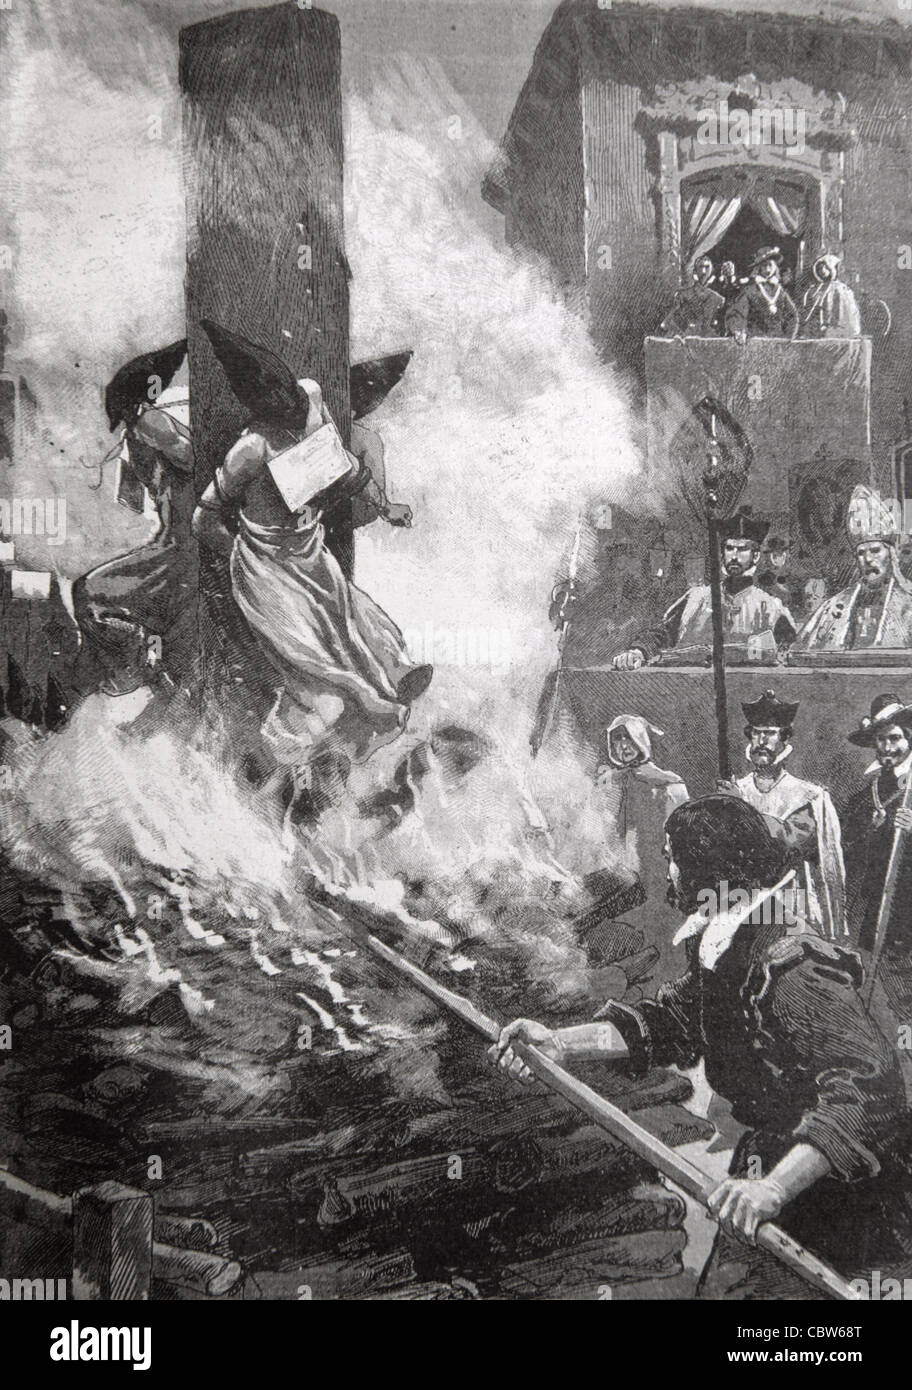 Brûler des hérétiques, des apostats, des sorcières ou des mécréants pendant l'Inquisition espagnole Espagne. Illustration ancienne ou gravure Banque D'Images